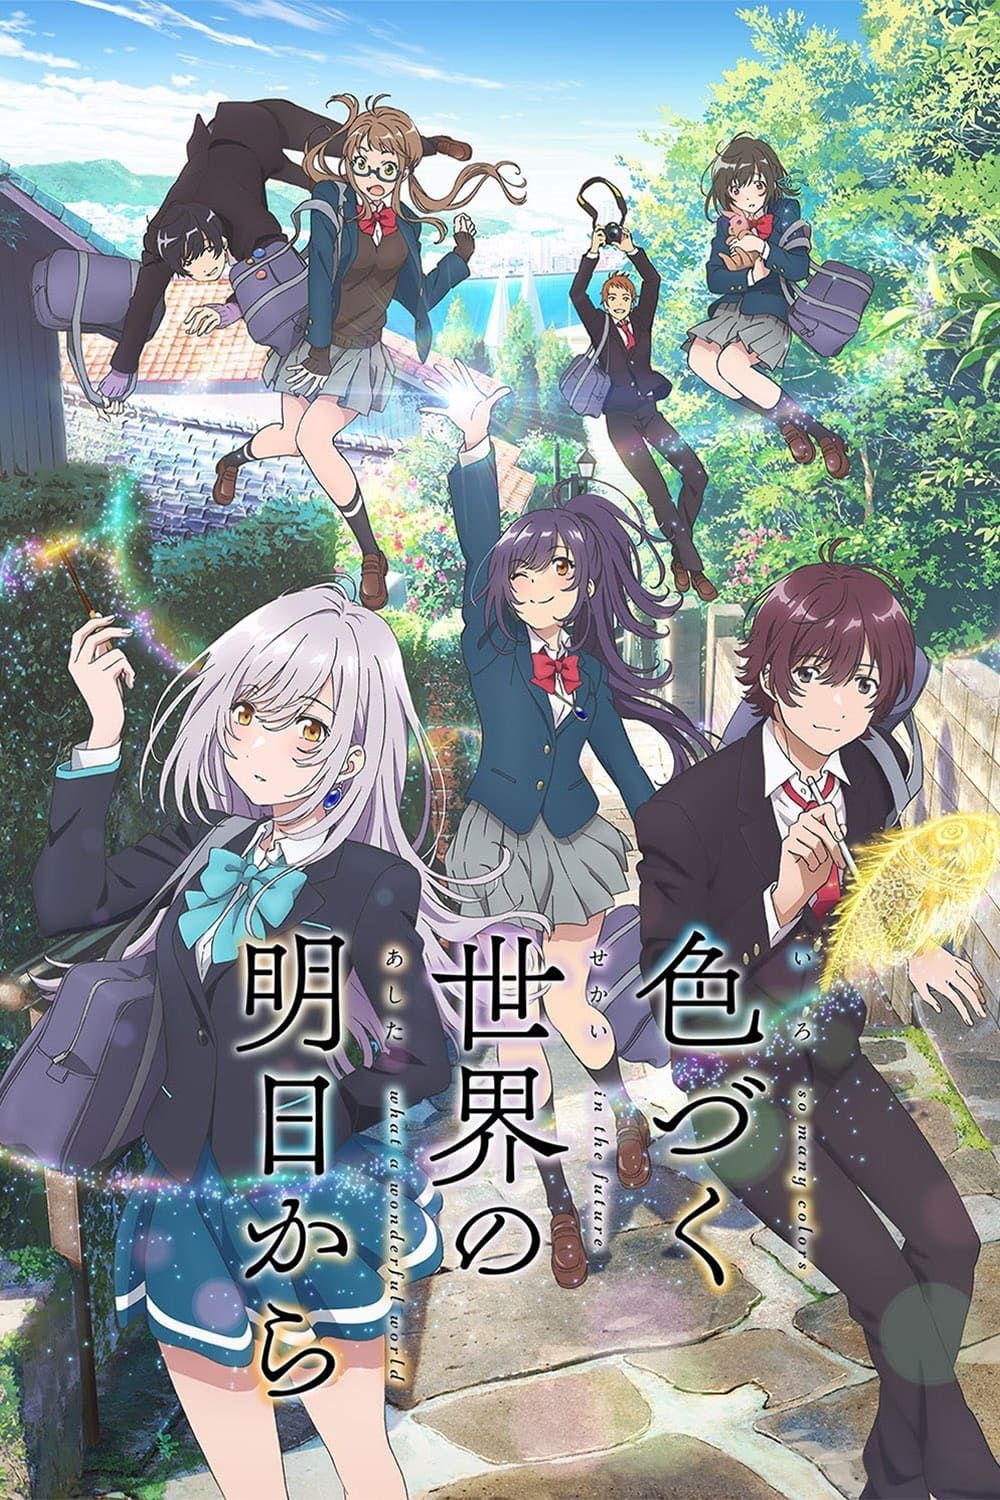 [Magic] Irozuku Sekai no Ashita kara (TV) (Sub) Full Complete